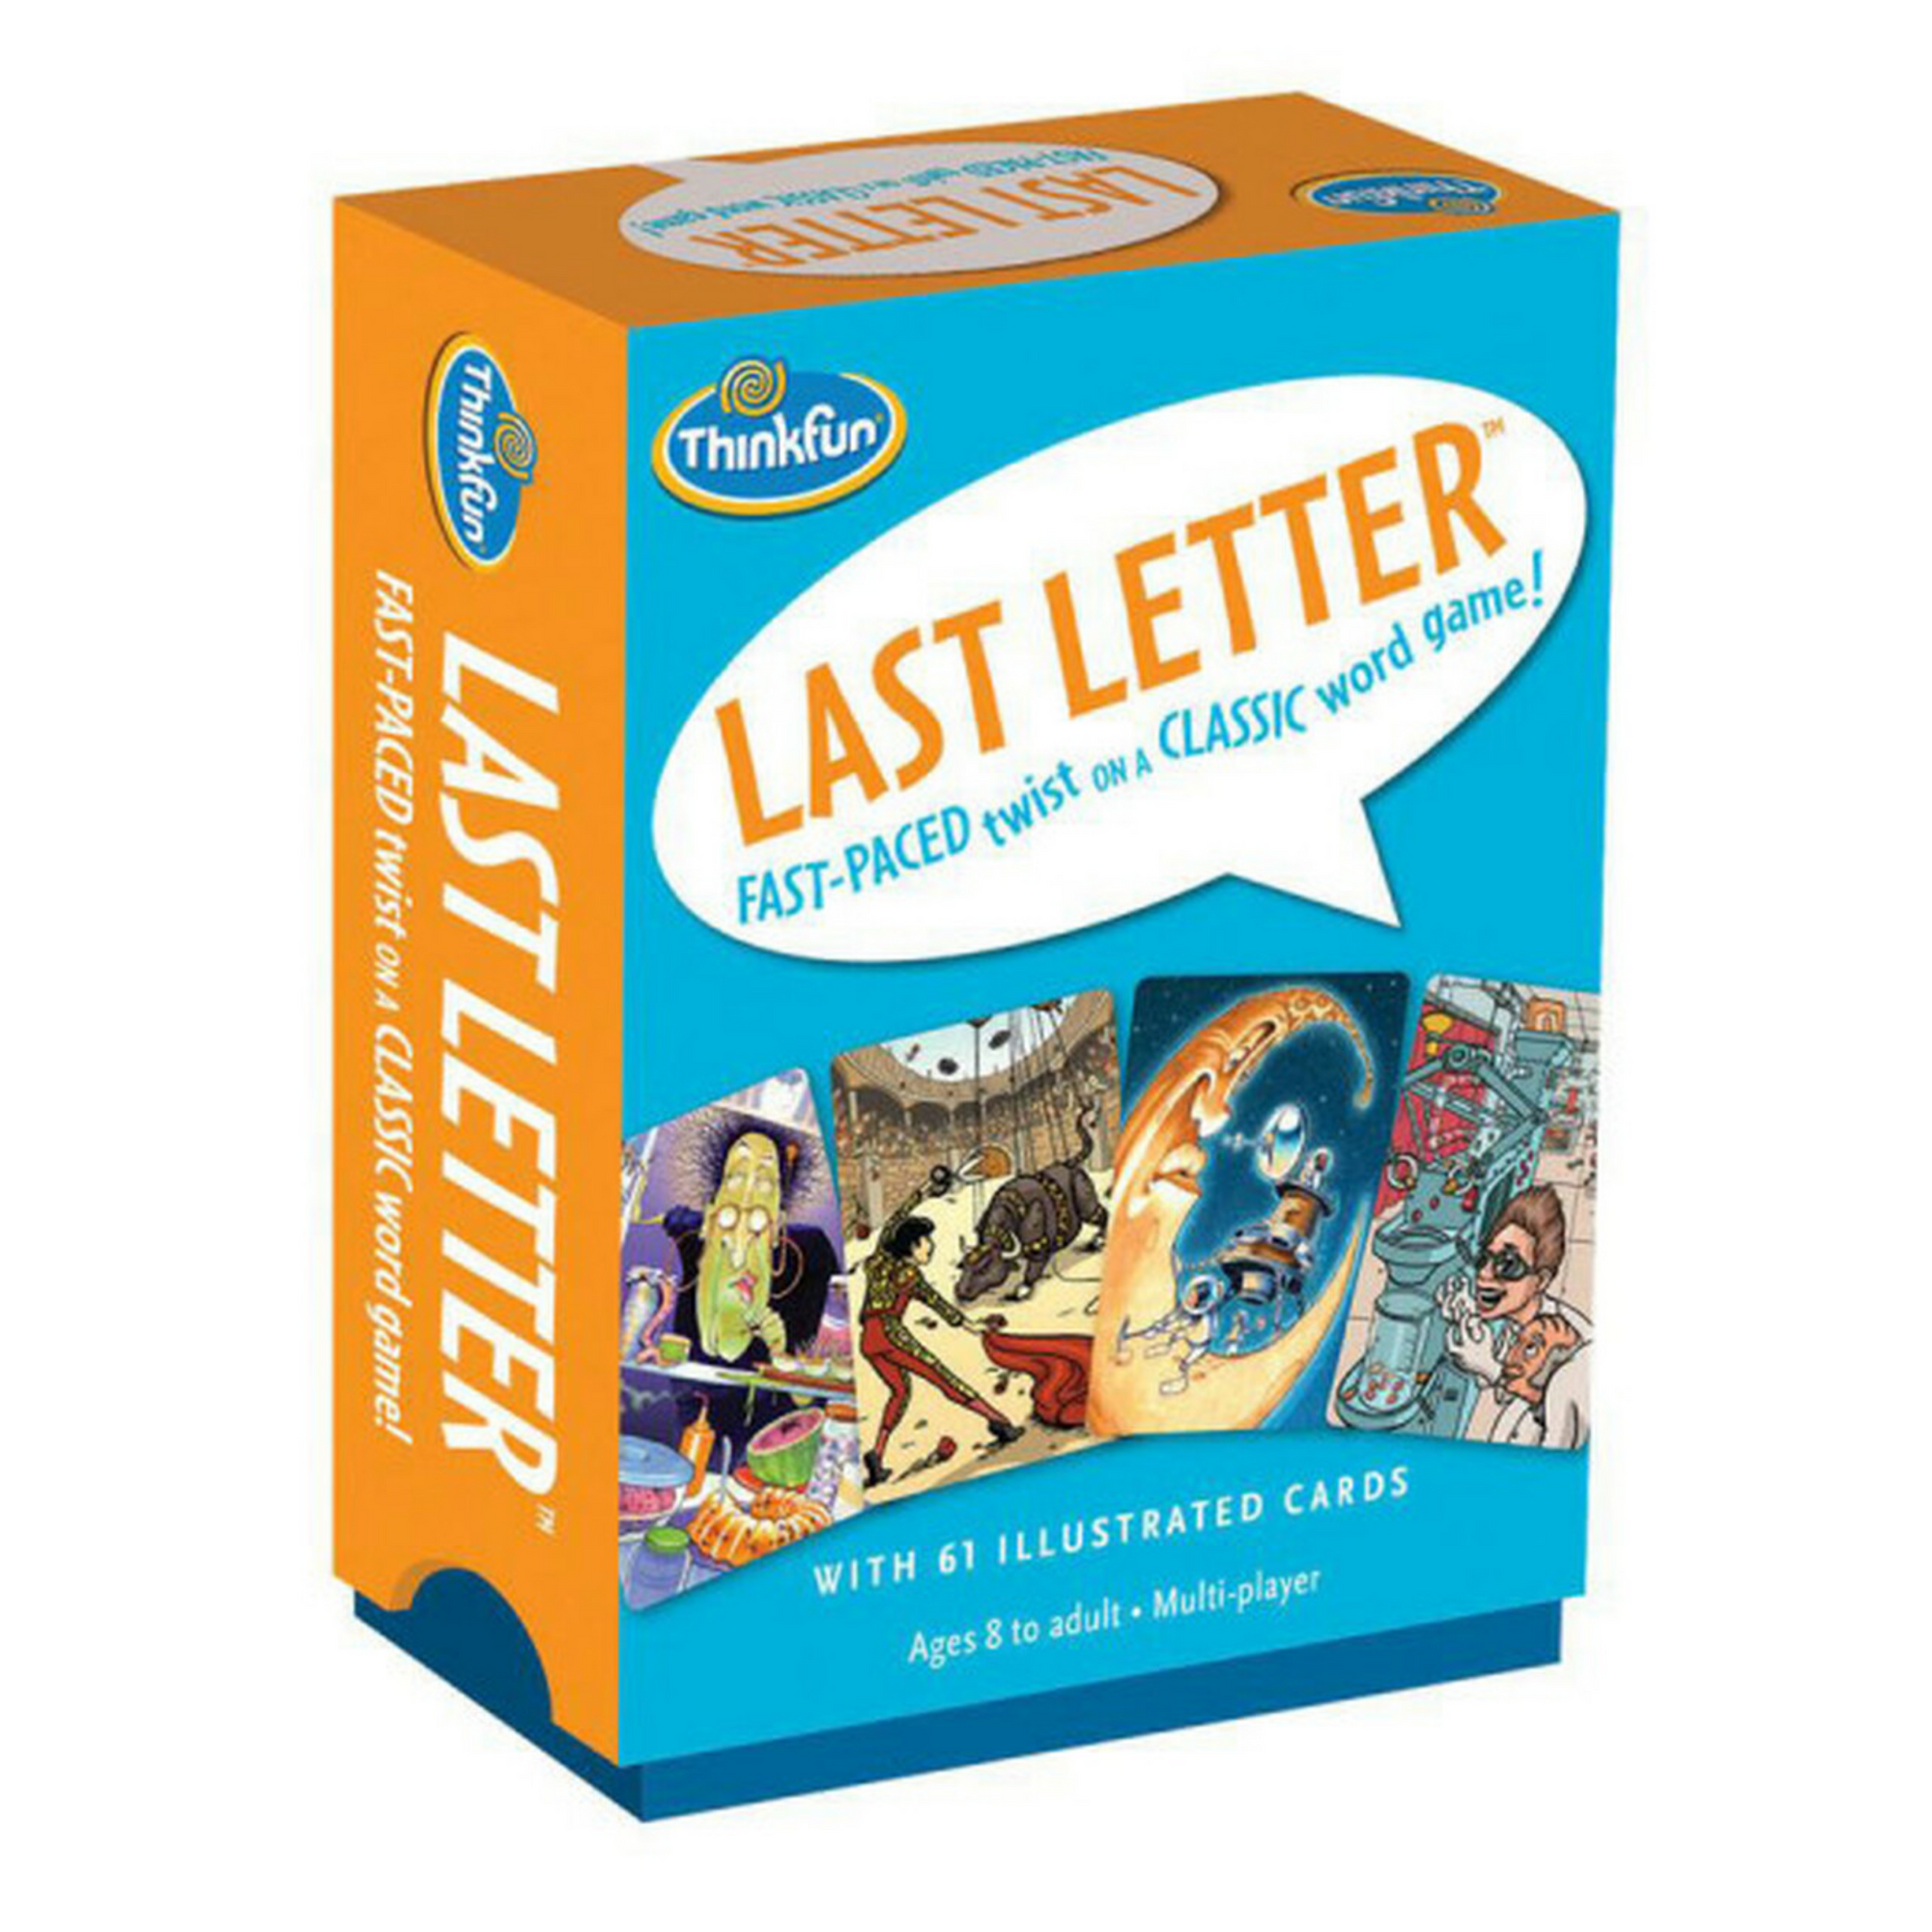 Juego Last Letter cartas